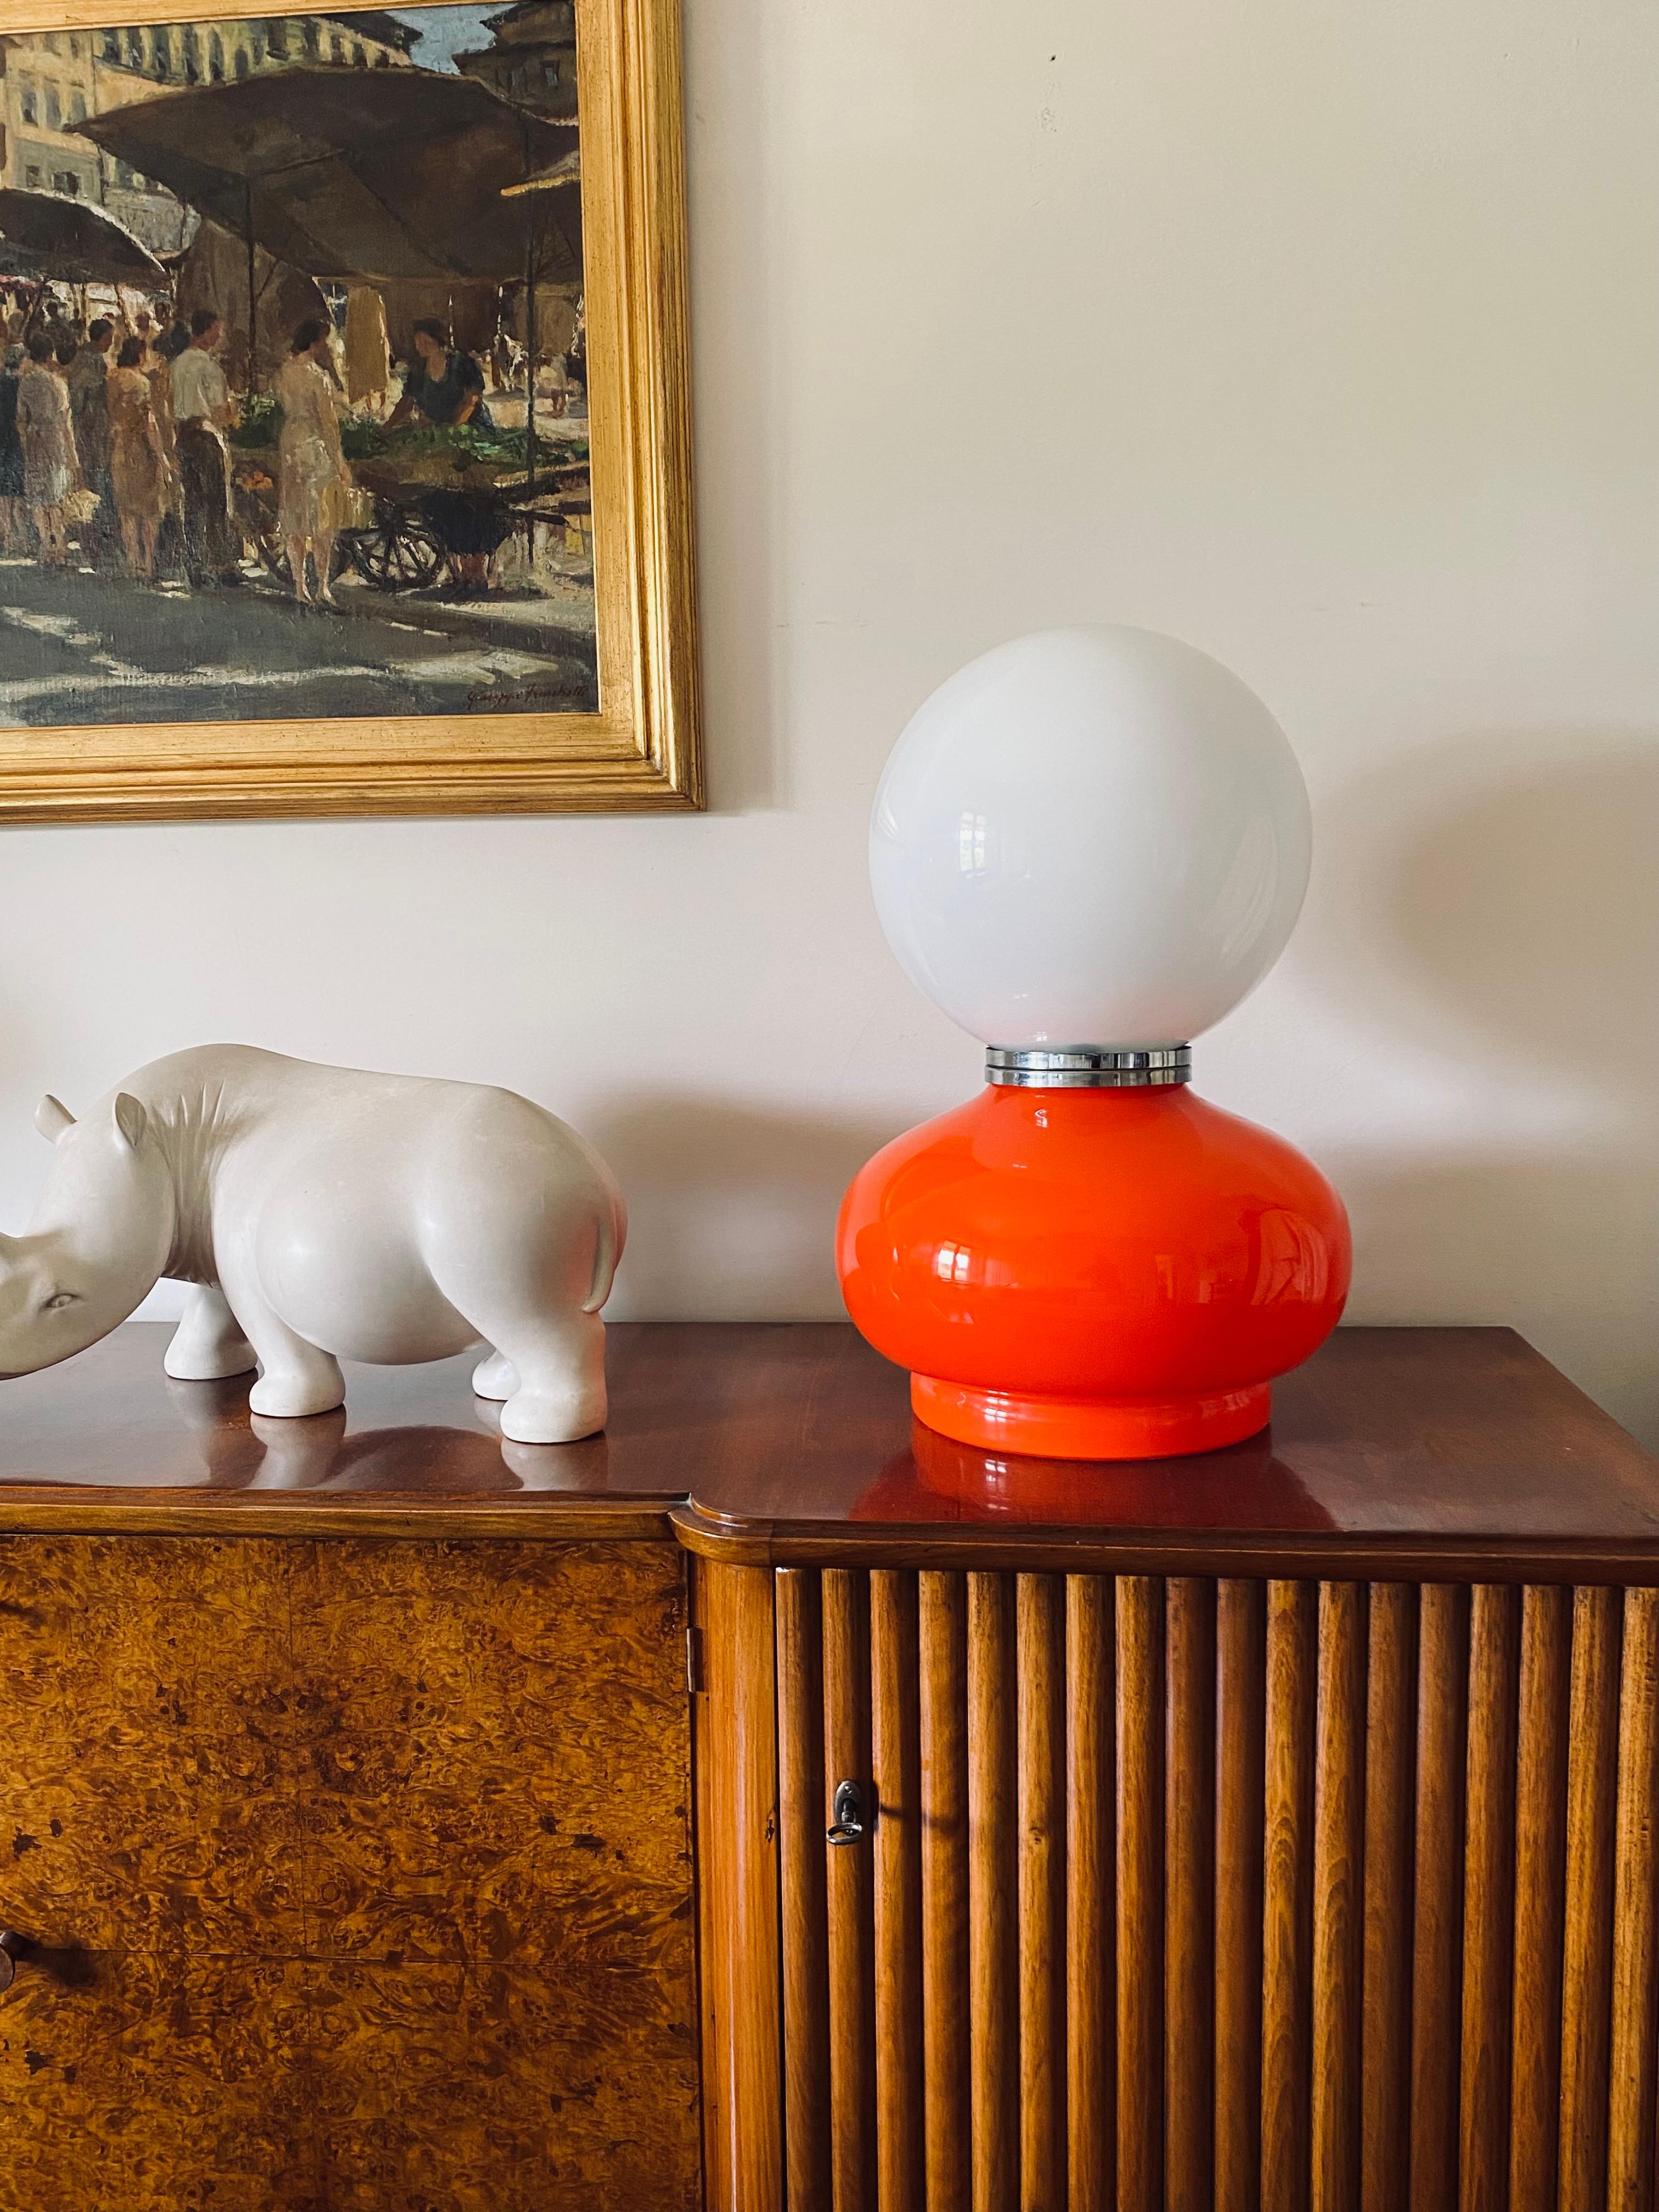 Tischlampe aus Murano-Glas, Space Age.

Entworfen von Carlo Nason, AV Mazzega, Italien 1970er Jahre

Opalin halb weißes Glas und rotes Glas. Verchromtes Aluminium. Zwei Glühbirnen, eine beleuchtet die weiße Kugel, die andere den orangenen